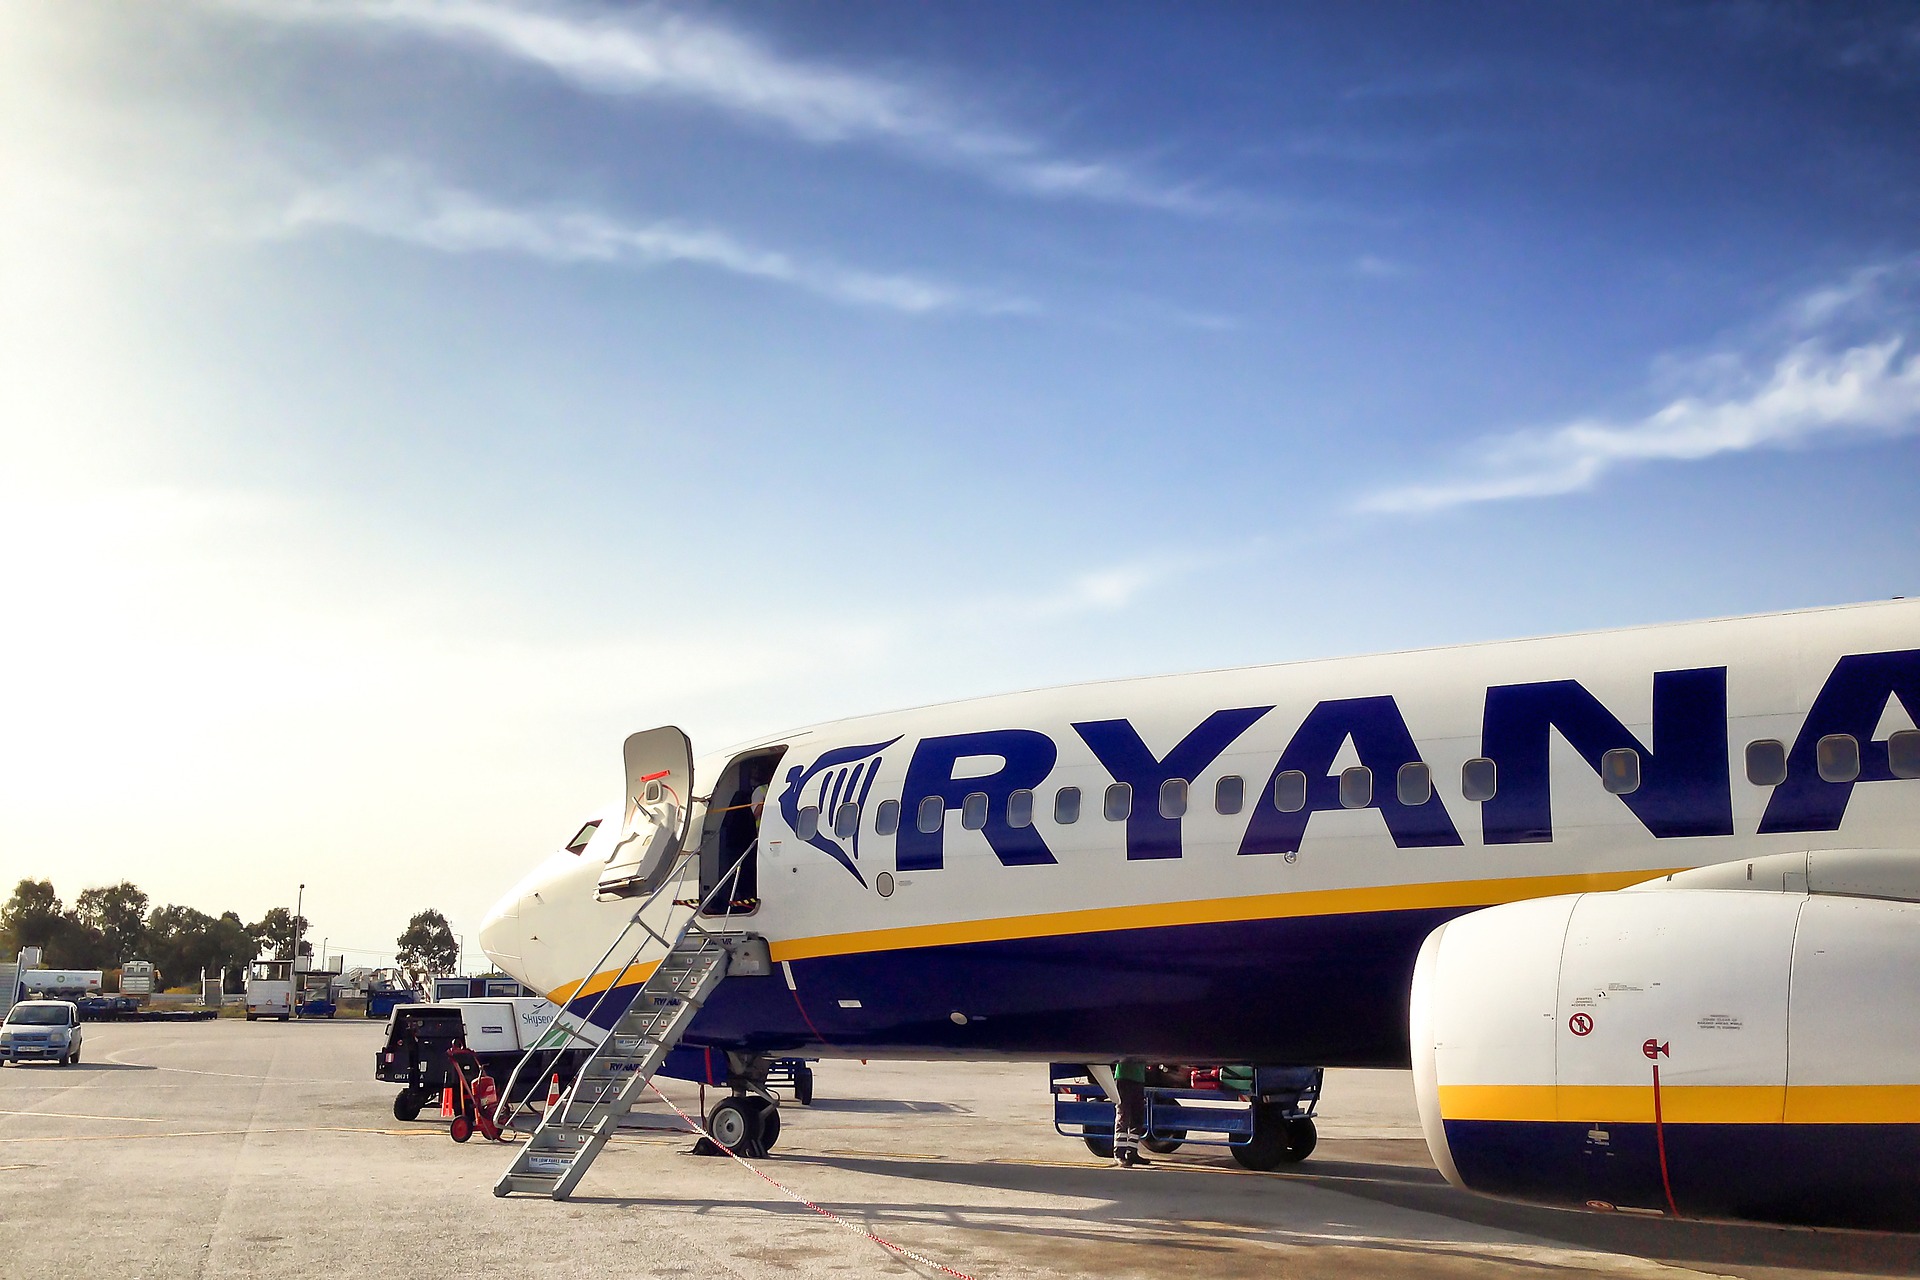 Vlucht-Vertraagd.nl zet Ryanair voor het blok om achterstallige compensatie uit te betalen